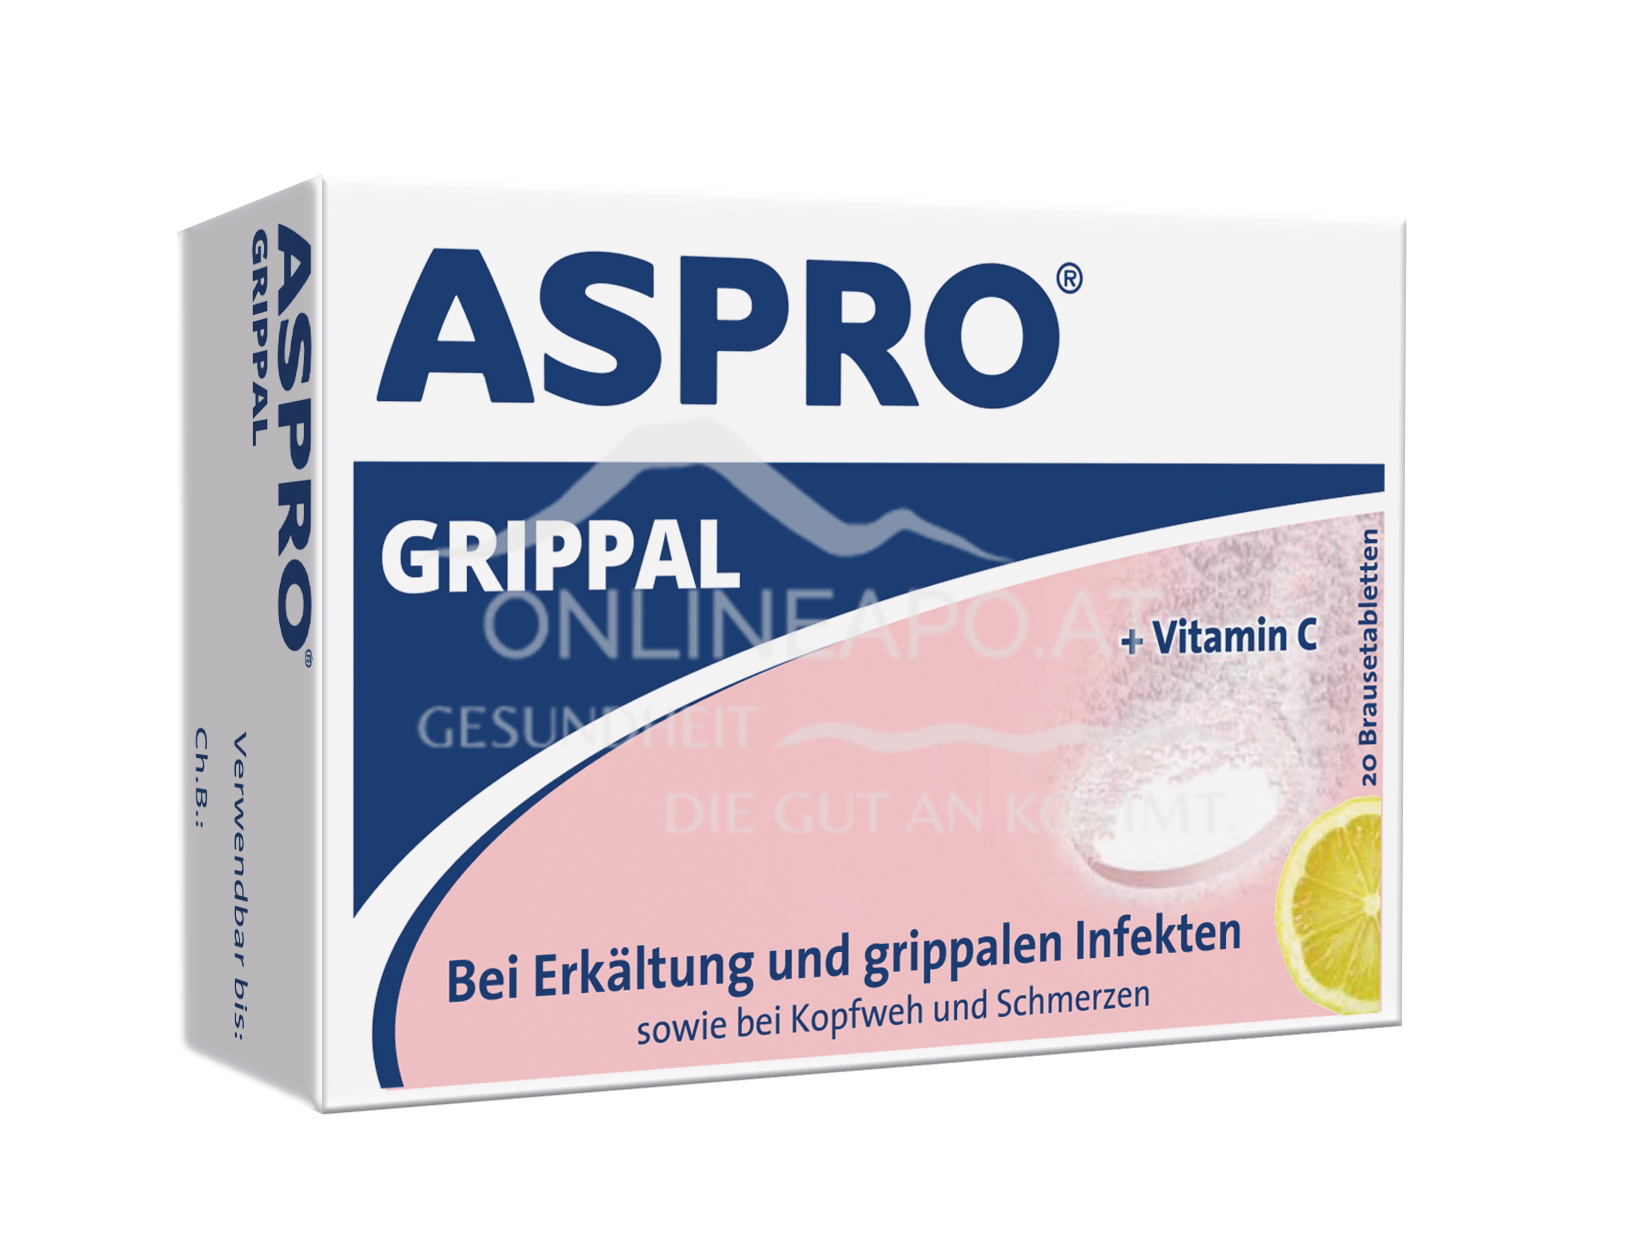 Aspro® Grippal - Brausetabletten